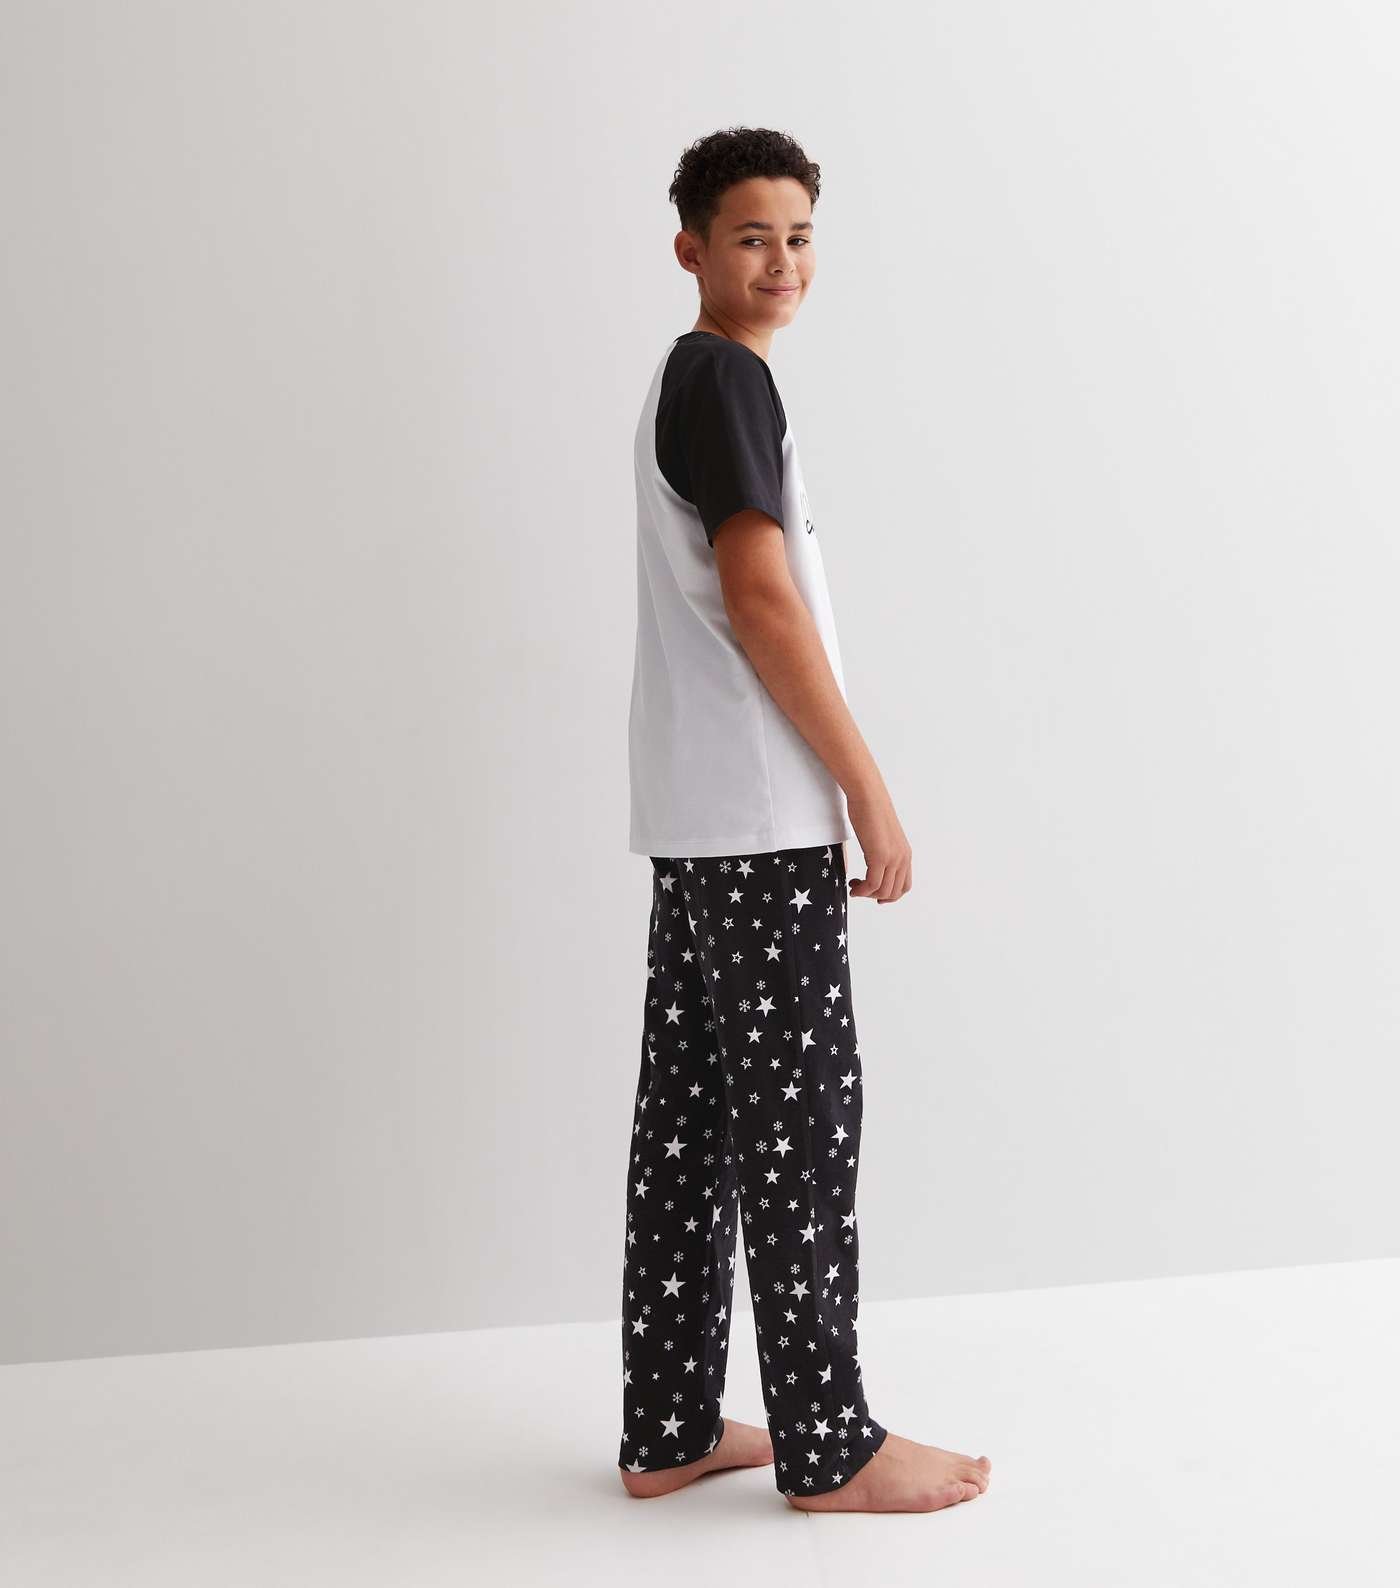 Boys Black Family Christmas Jogger Pyjama Set with Star Print Image 5